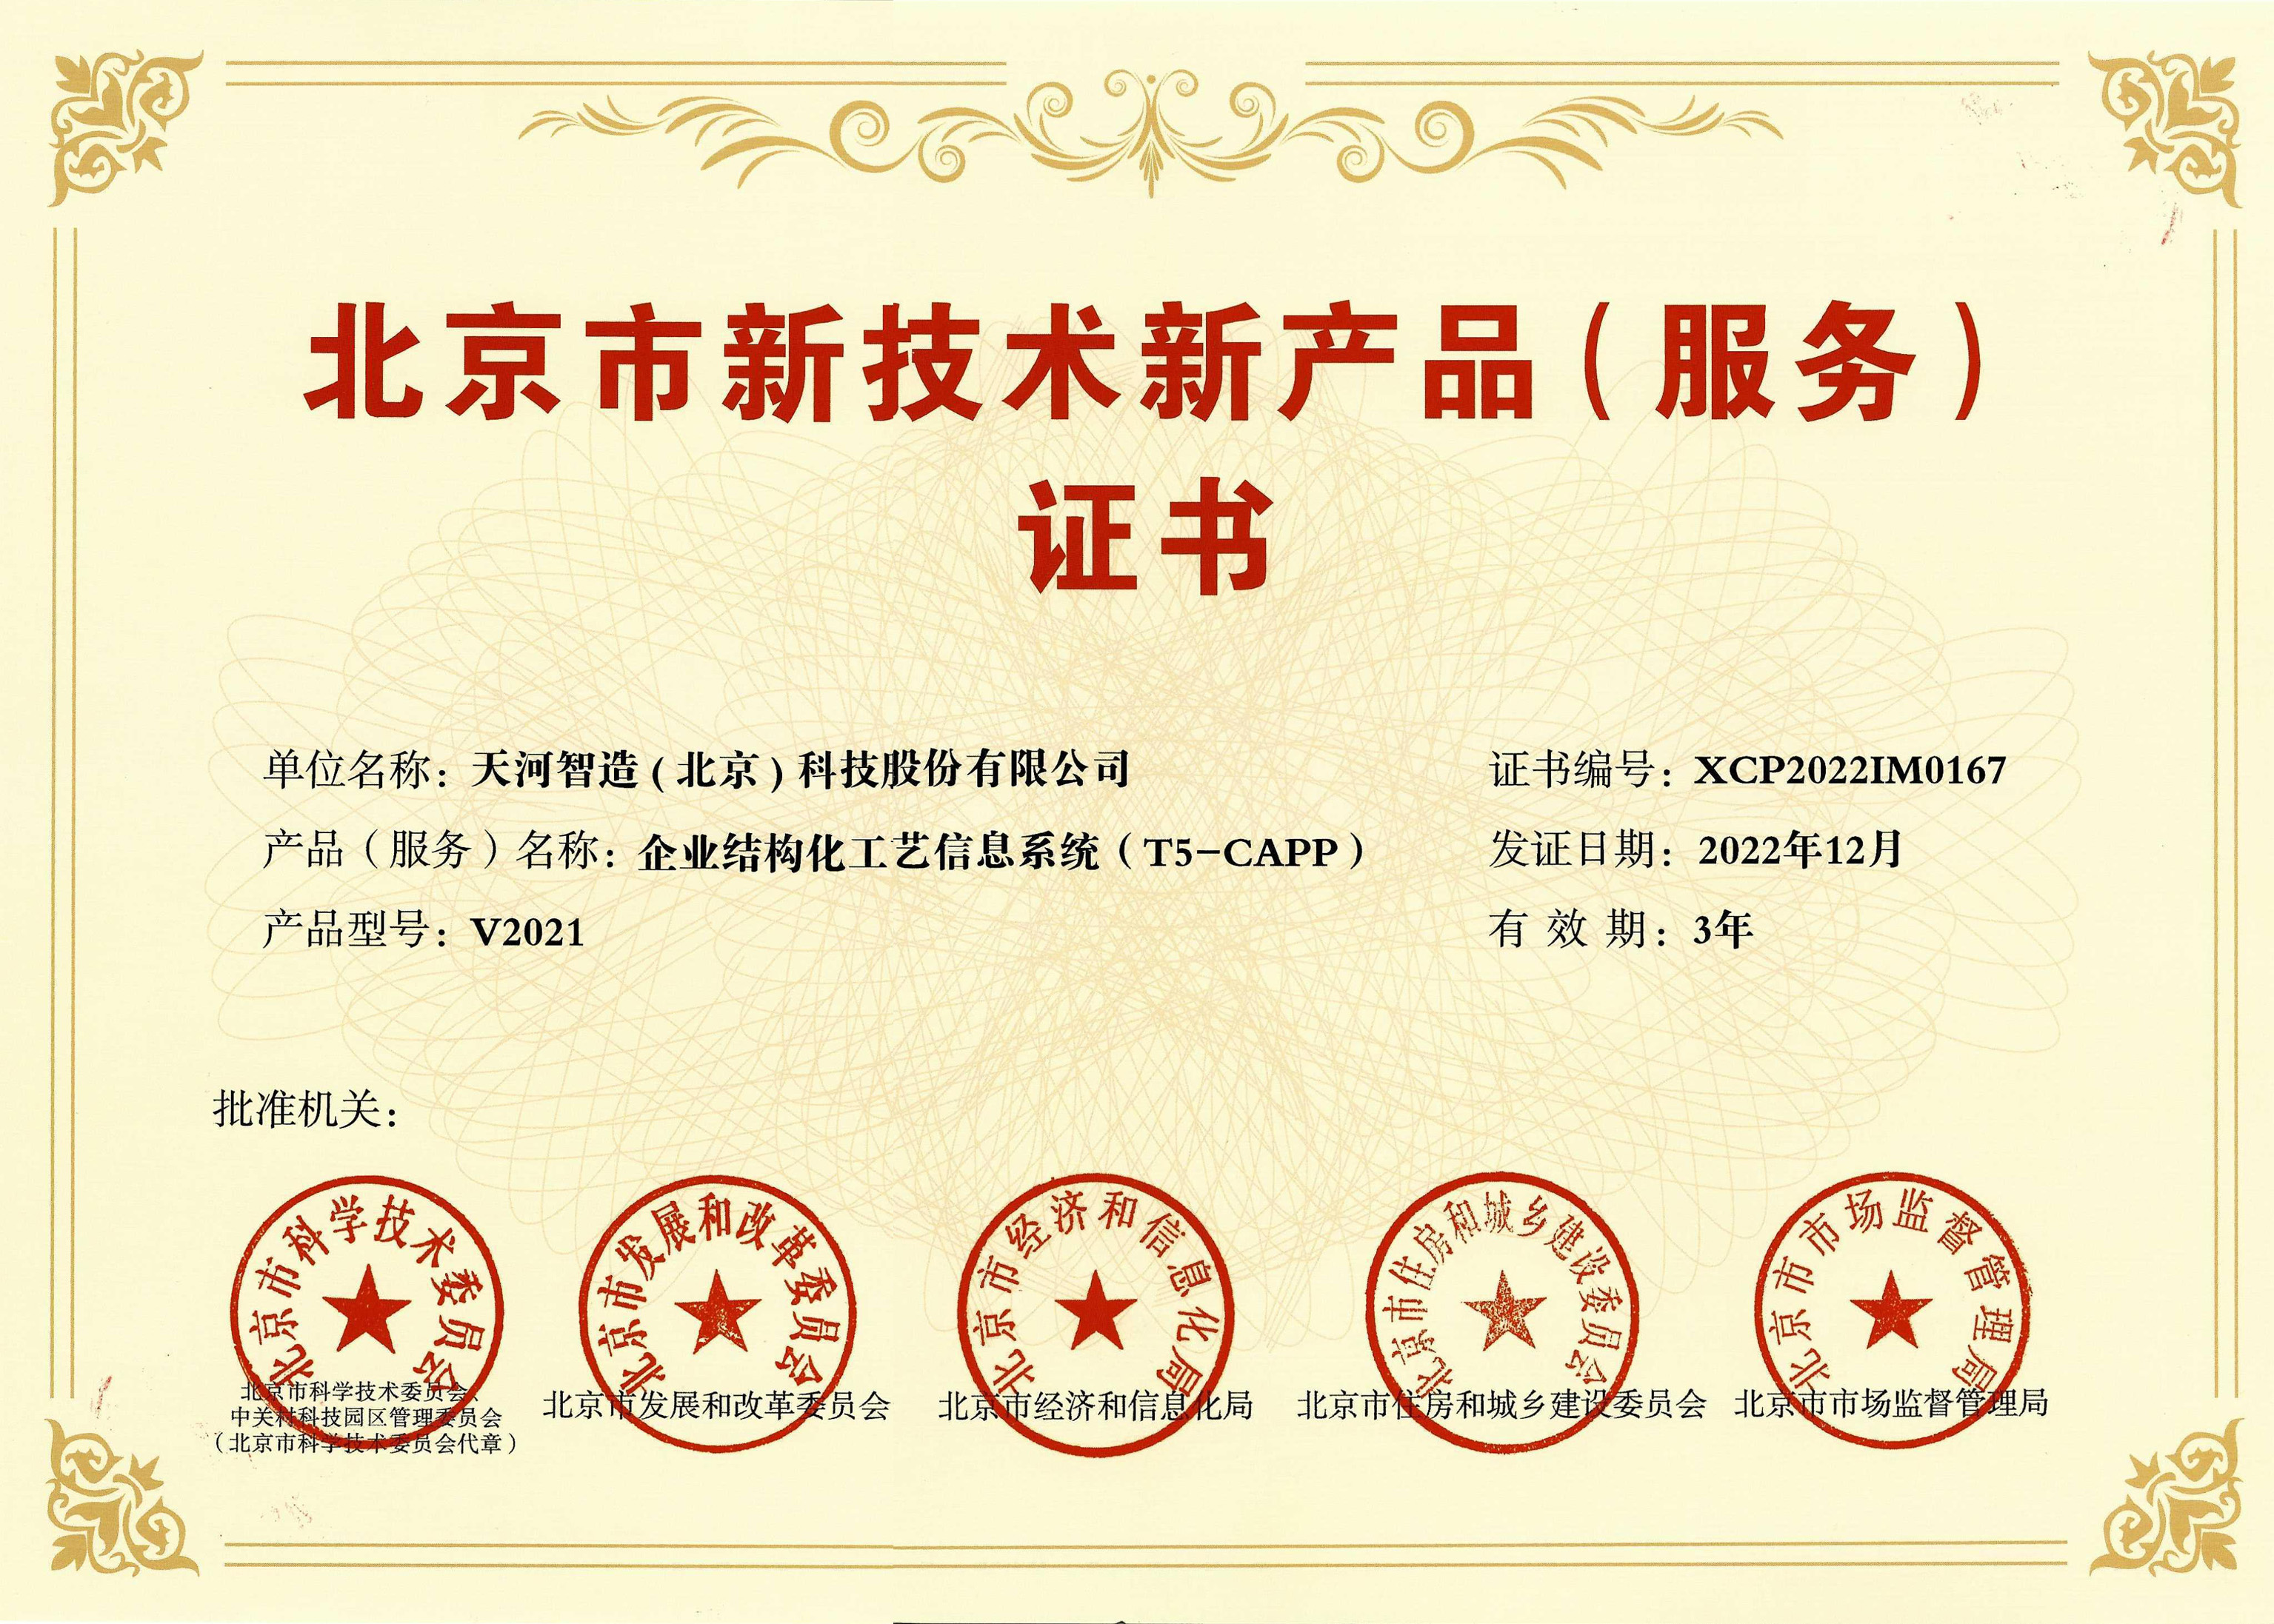 北京市新技术产品服务证书-capp